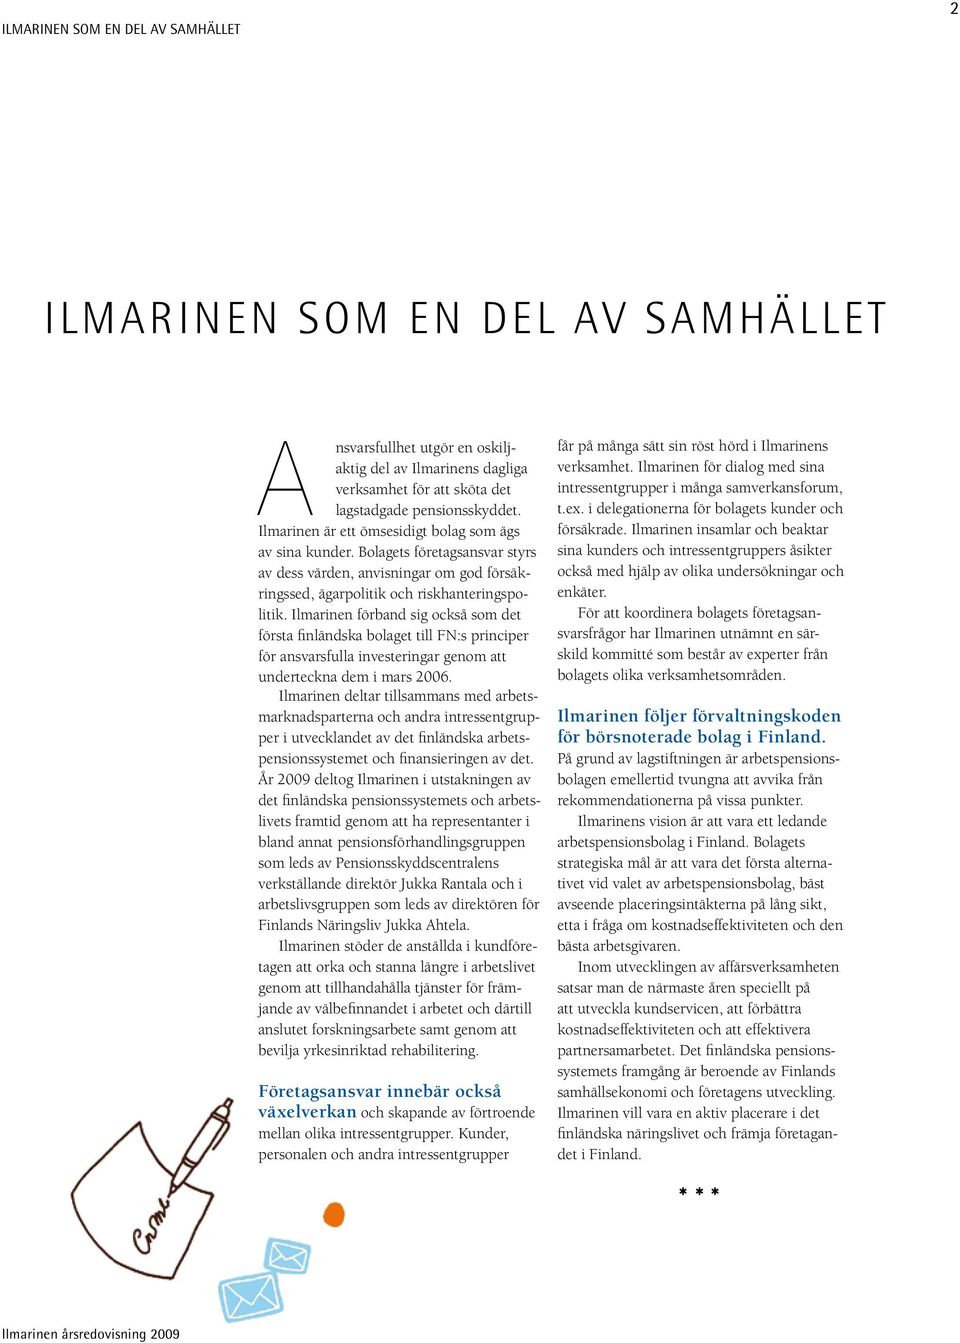 Ilmarinen förband sig också som det första finländska bolaget till FN:s principer för ansvarsfulla investeringar genom att underteckna dem i mars 2006.